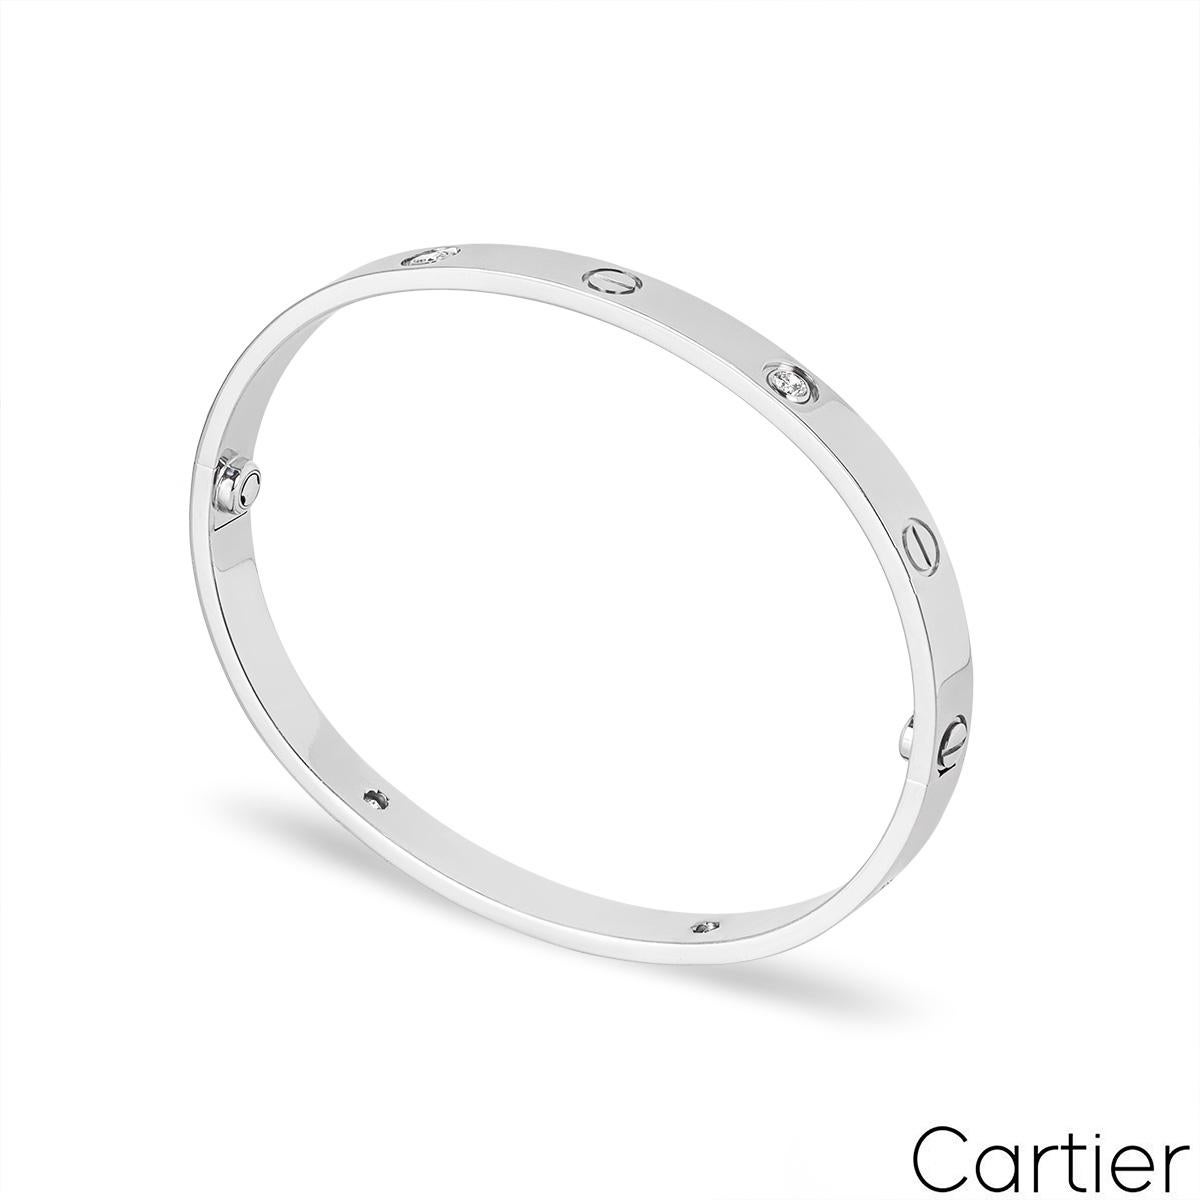 Un bracelet demi diamant en or blanc 18k de Cartier de la collection Love. Le bracelet comprend les motifs emblématiques de la vis sur le bord extérieur alternant avec 4 diamants ronds de taille brillant, d'un poids total de 0,42ct. Le bracelet, de